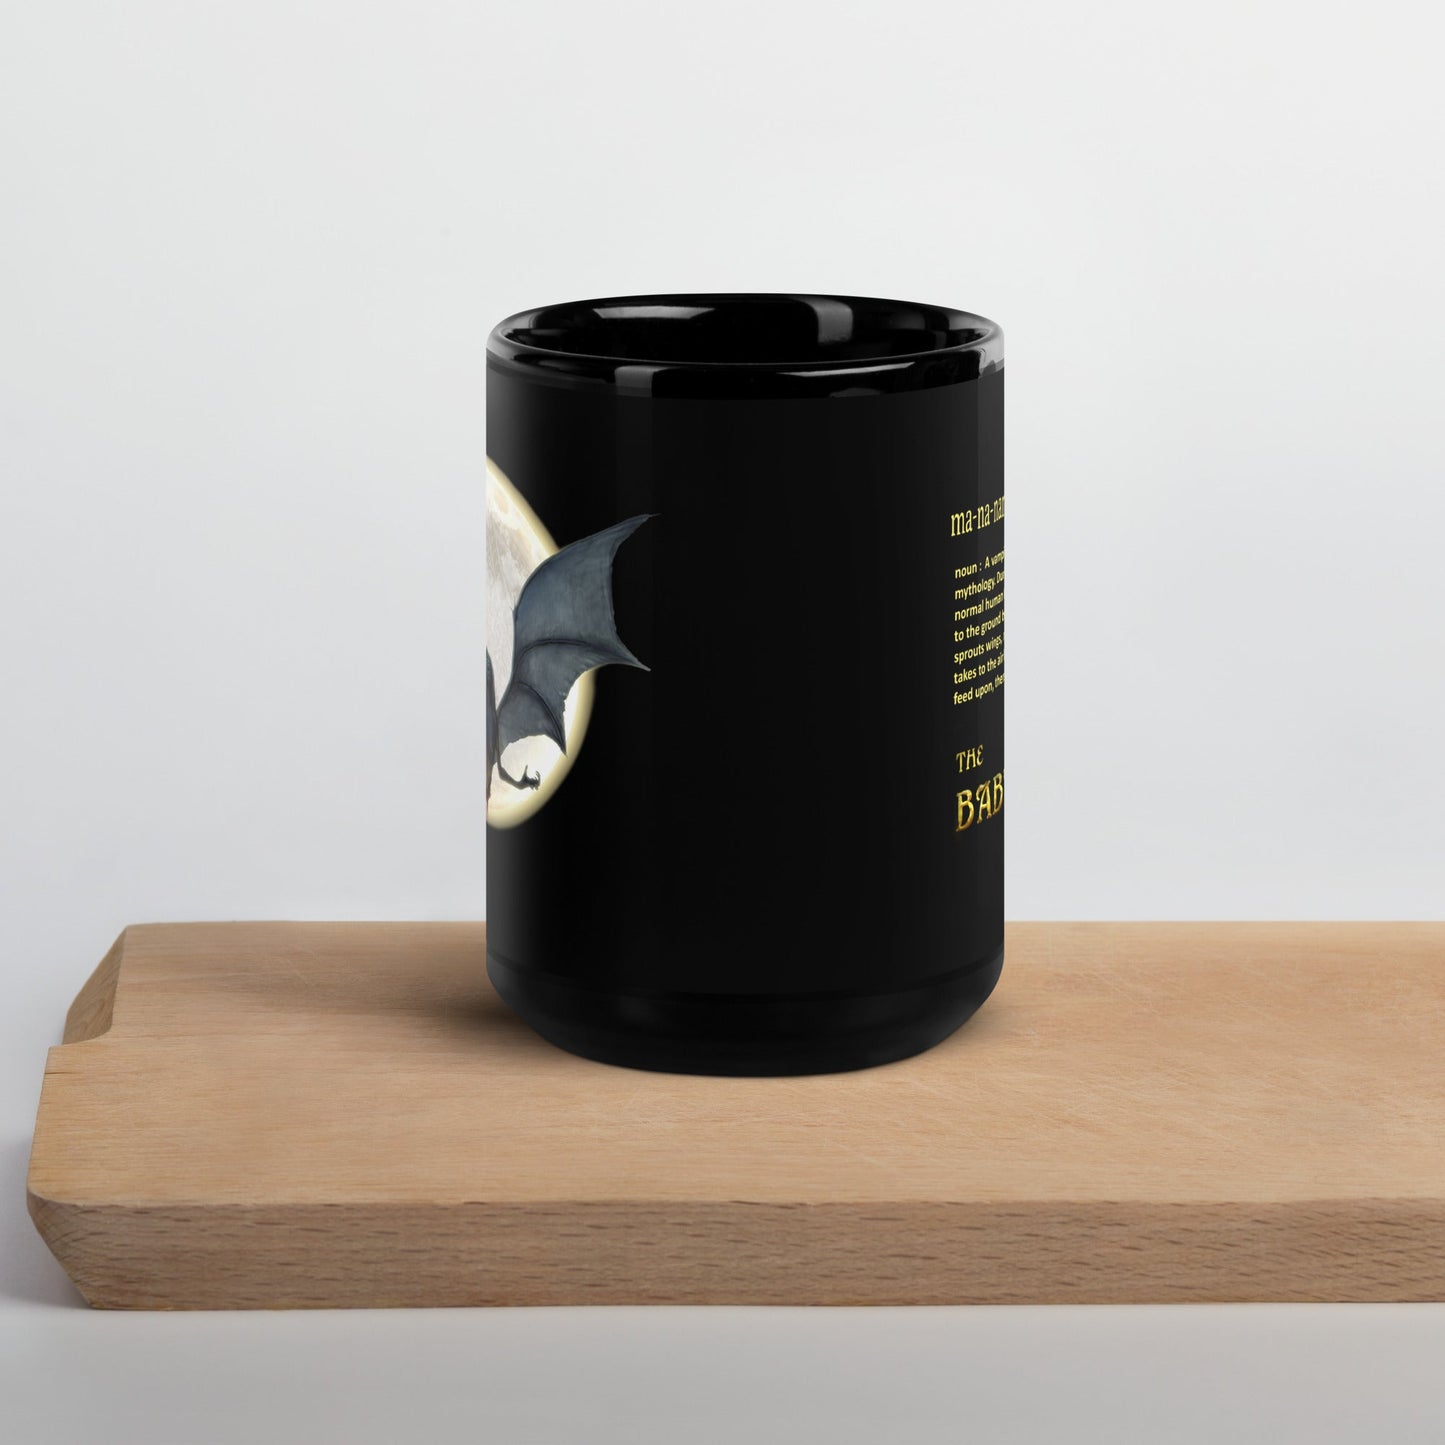 Black Glossy Mug | The Baby-Eater | Definition - Spectral Ink Shop - Mug -8899275_9323